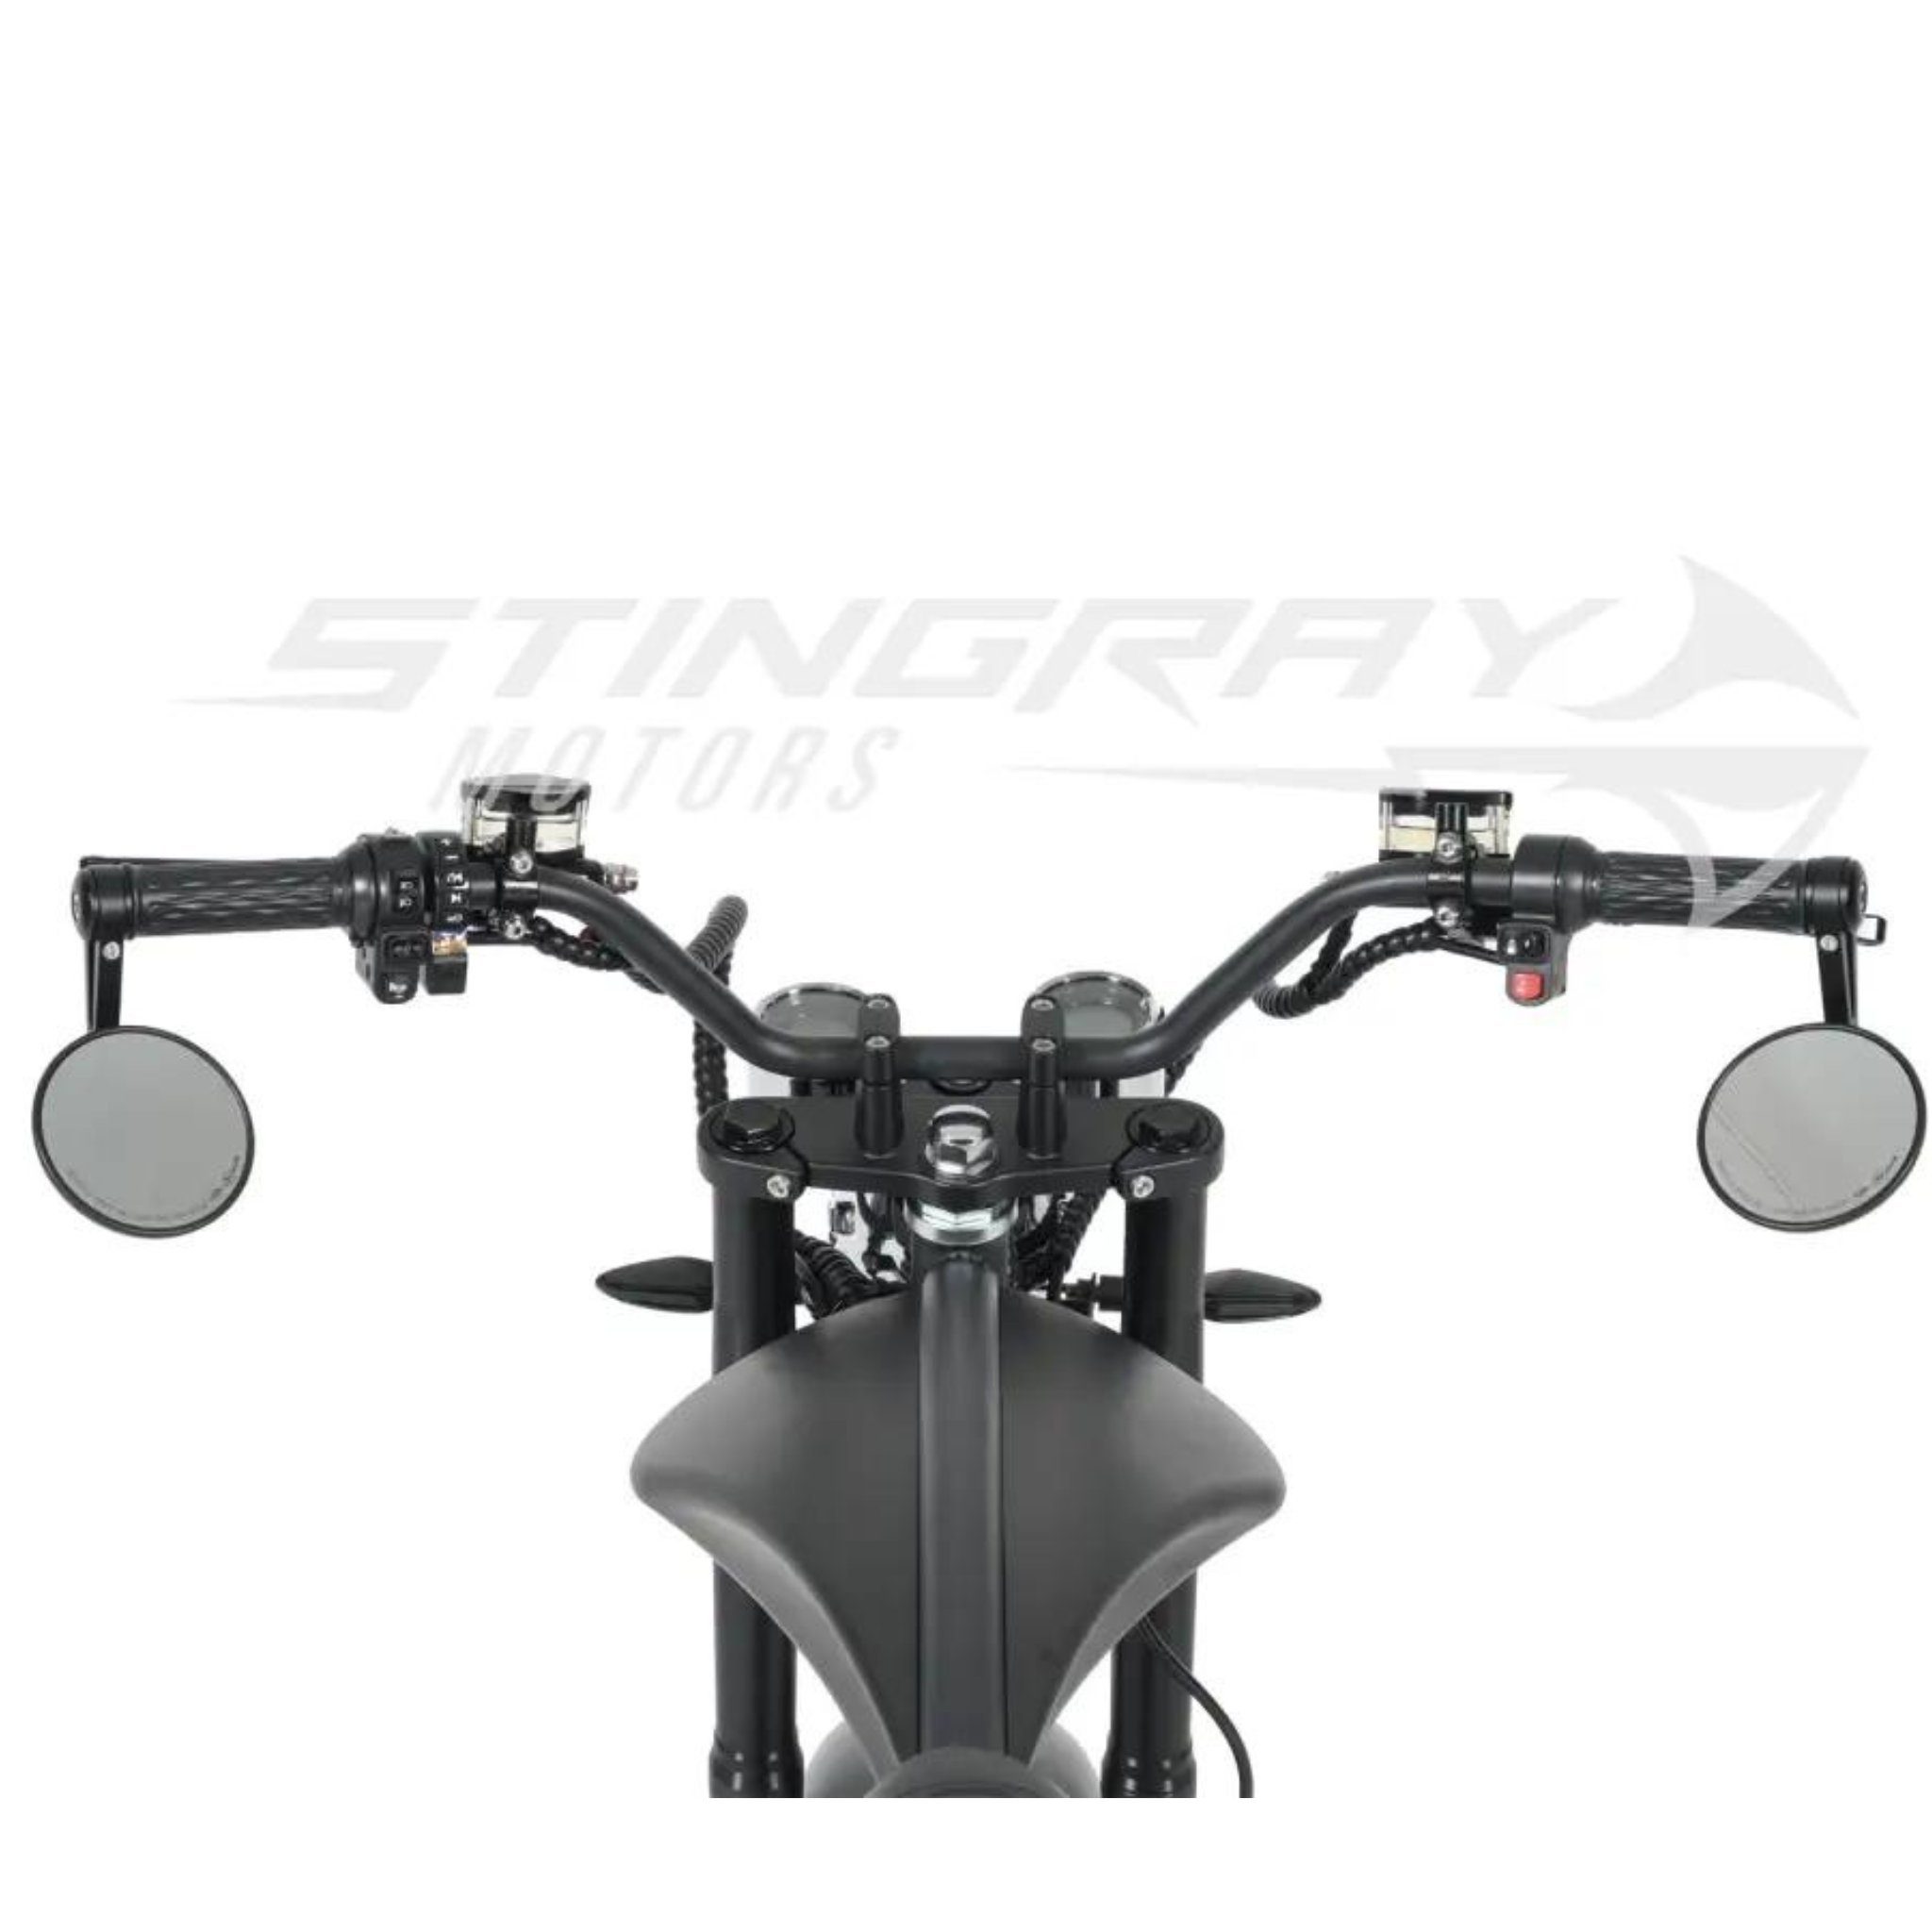 Stingray Motors E-Motorroller Elektroroller Harley Stingray W, Schwarz 3000,00 - 3kw Chopper km/h E M1P, 30Ah - Custom 45 